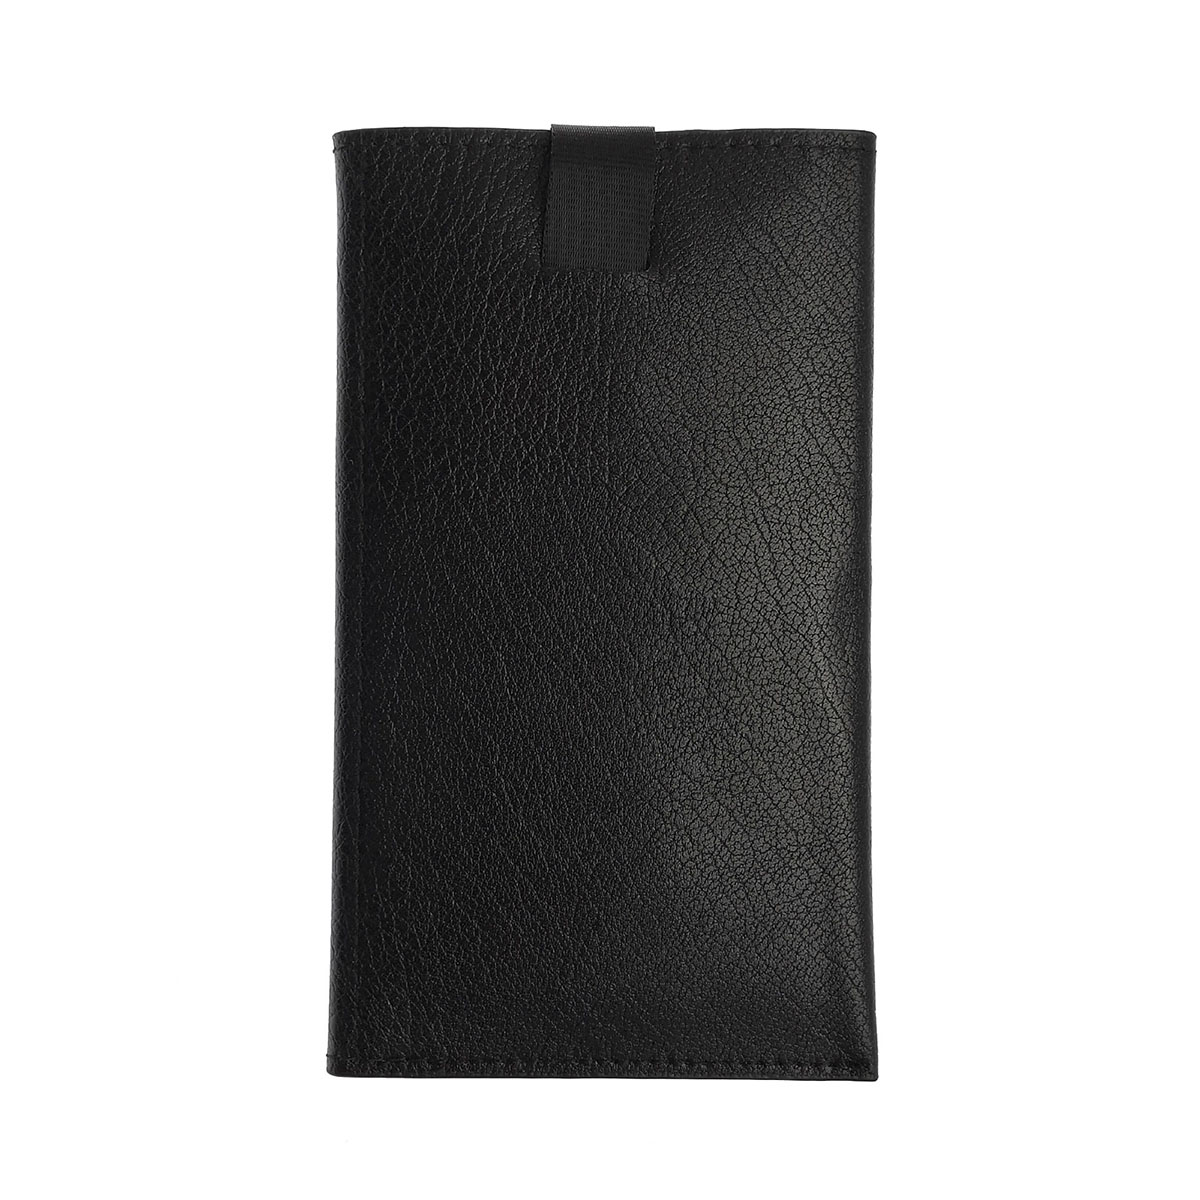 Чехол кошелек универсальный для смартфонов размером 4.7, экокожа, визитница, цвет черный.